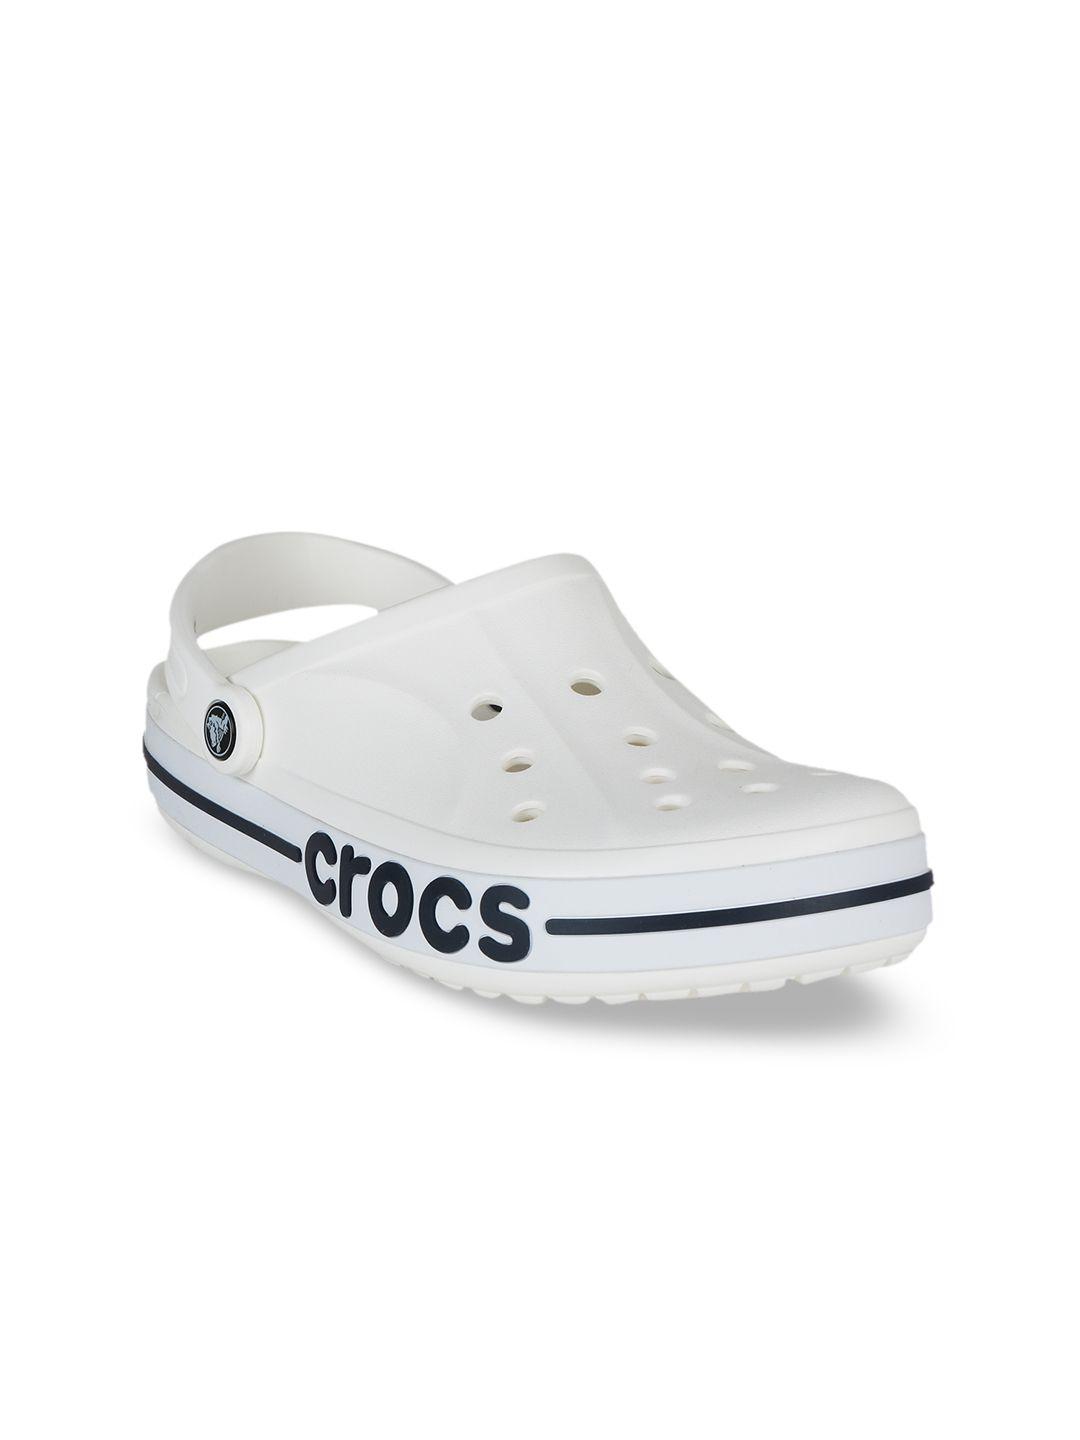 crocs women white clogs